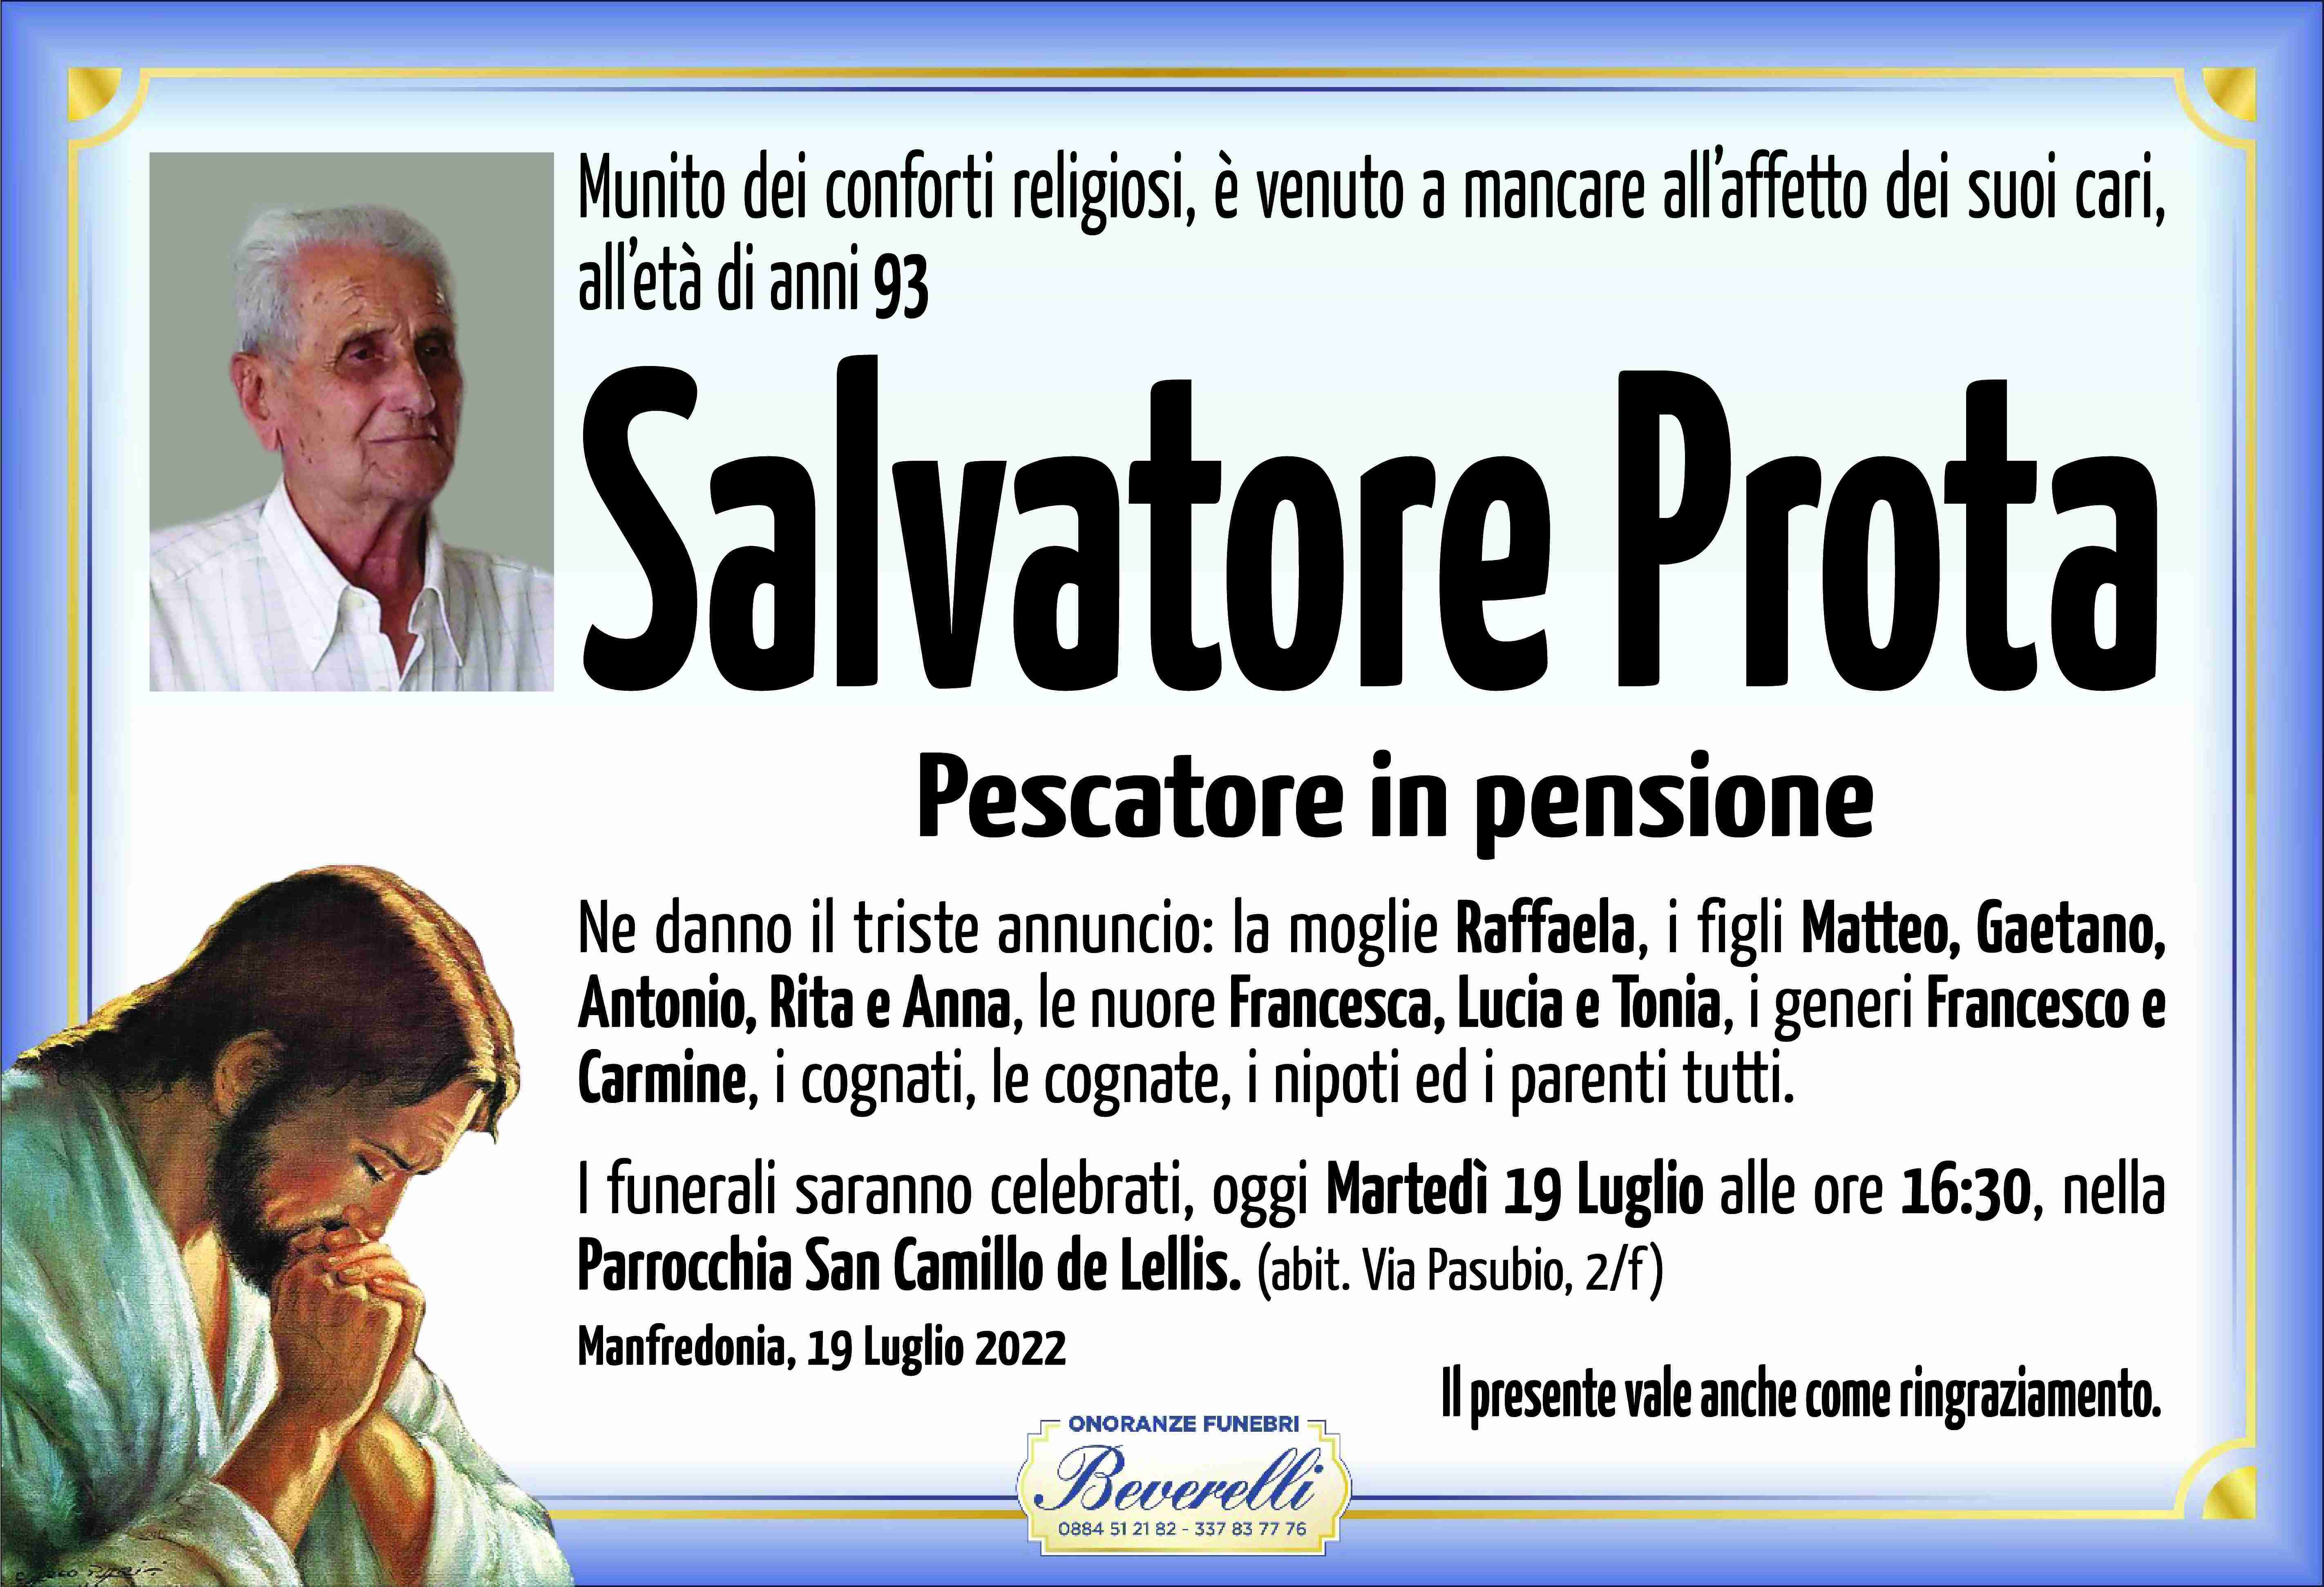 Salvatore Prota